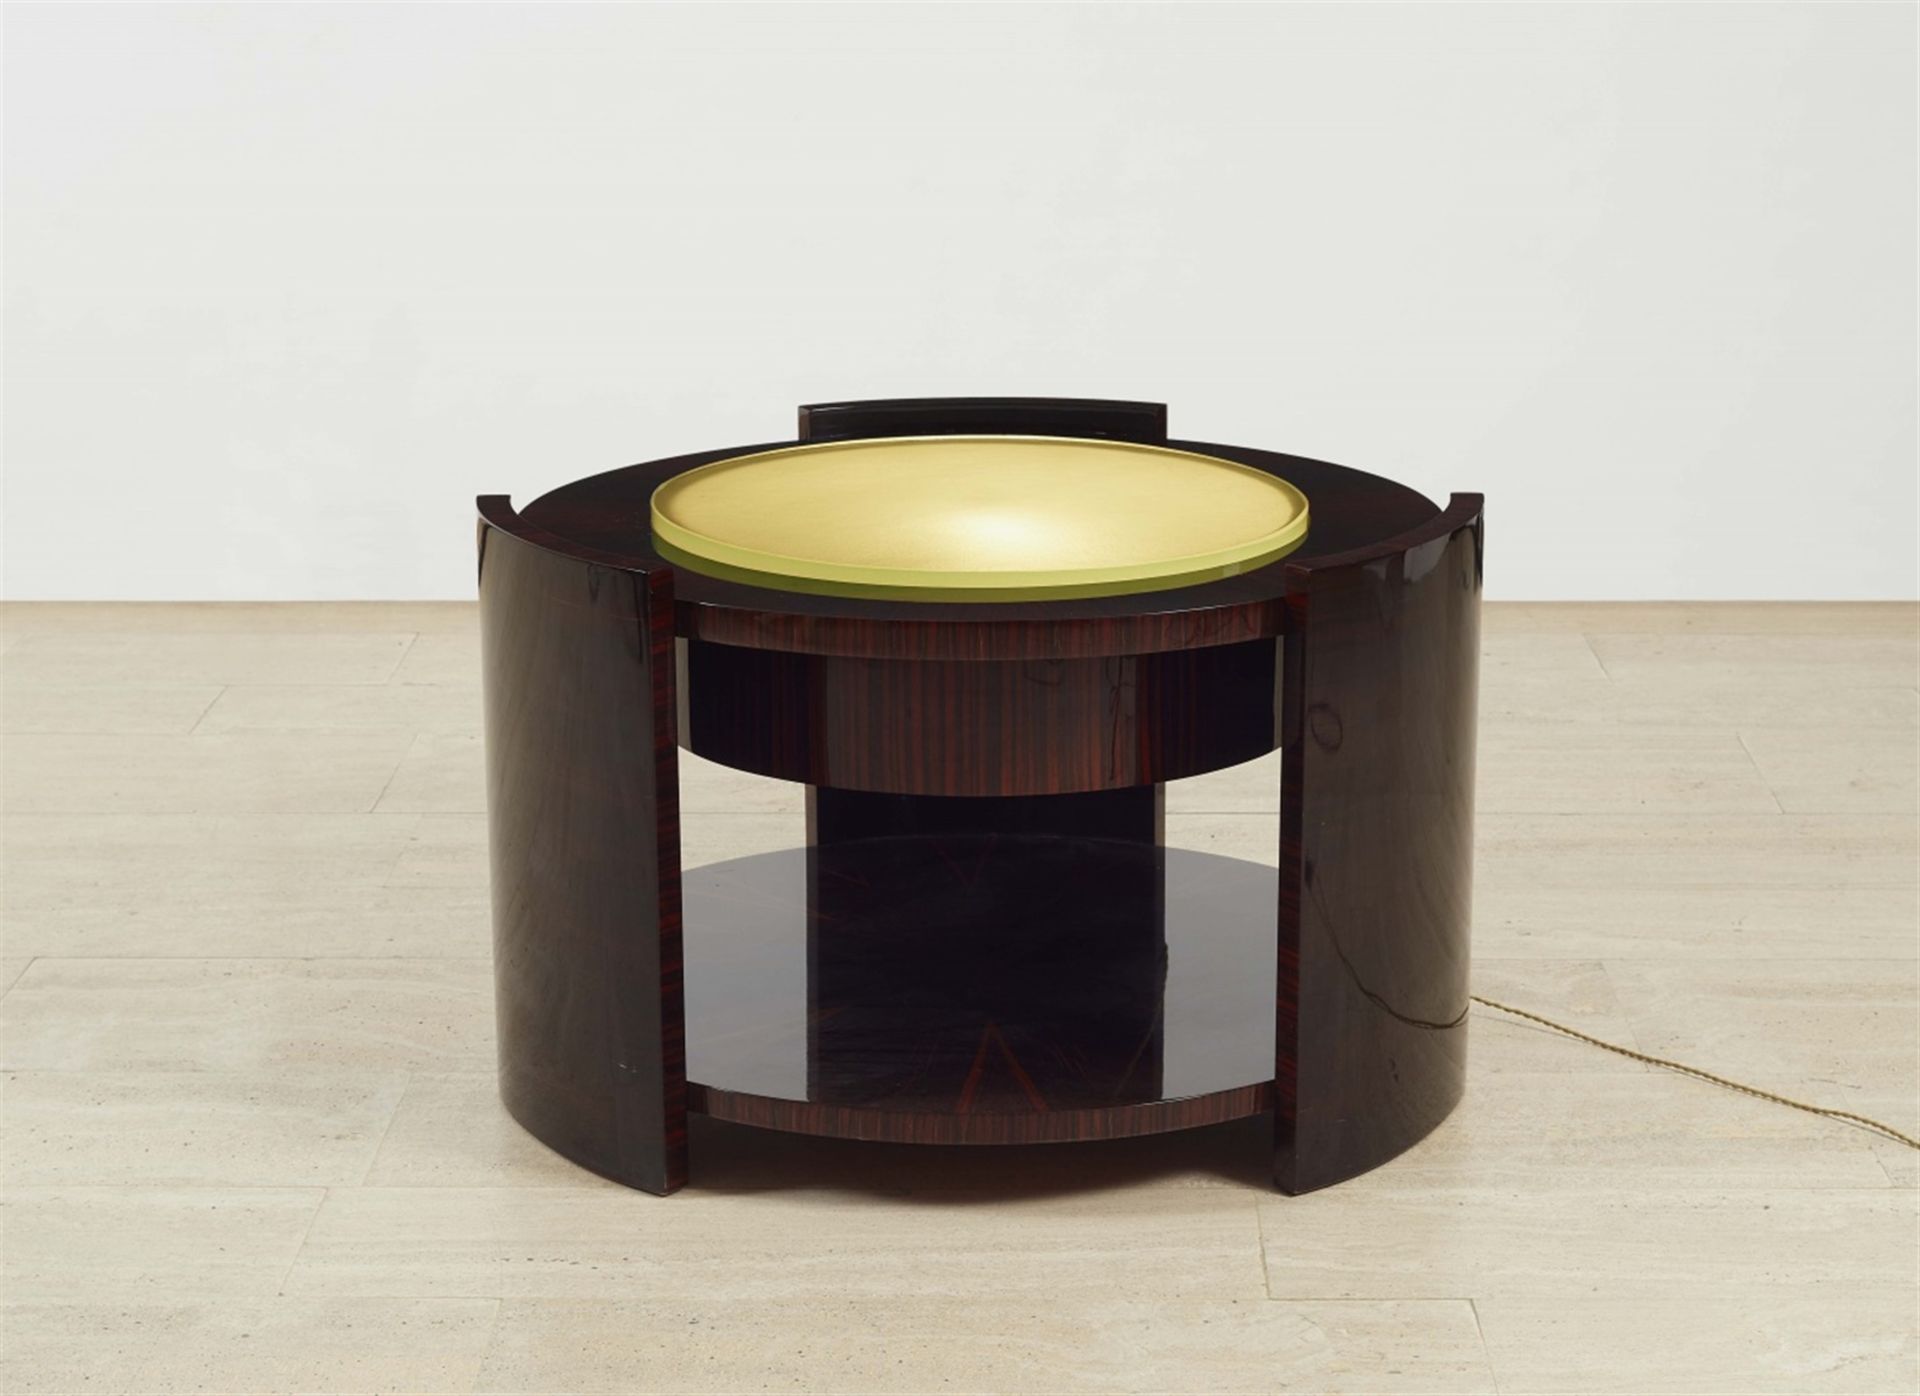 Table bassePalisander furniert, geschliffene Glasplatte, elektrifiziert. H 55,5, D 88 cm. Im Stil